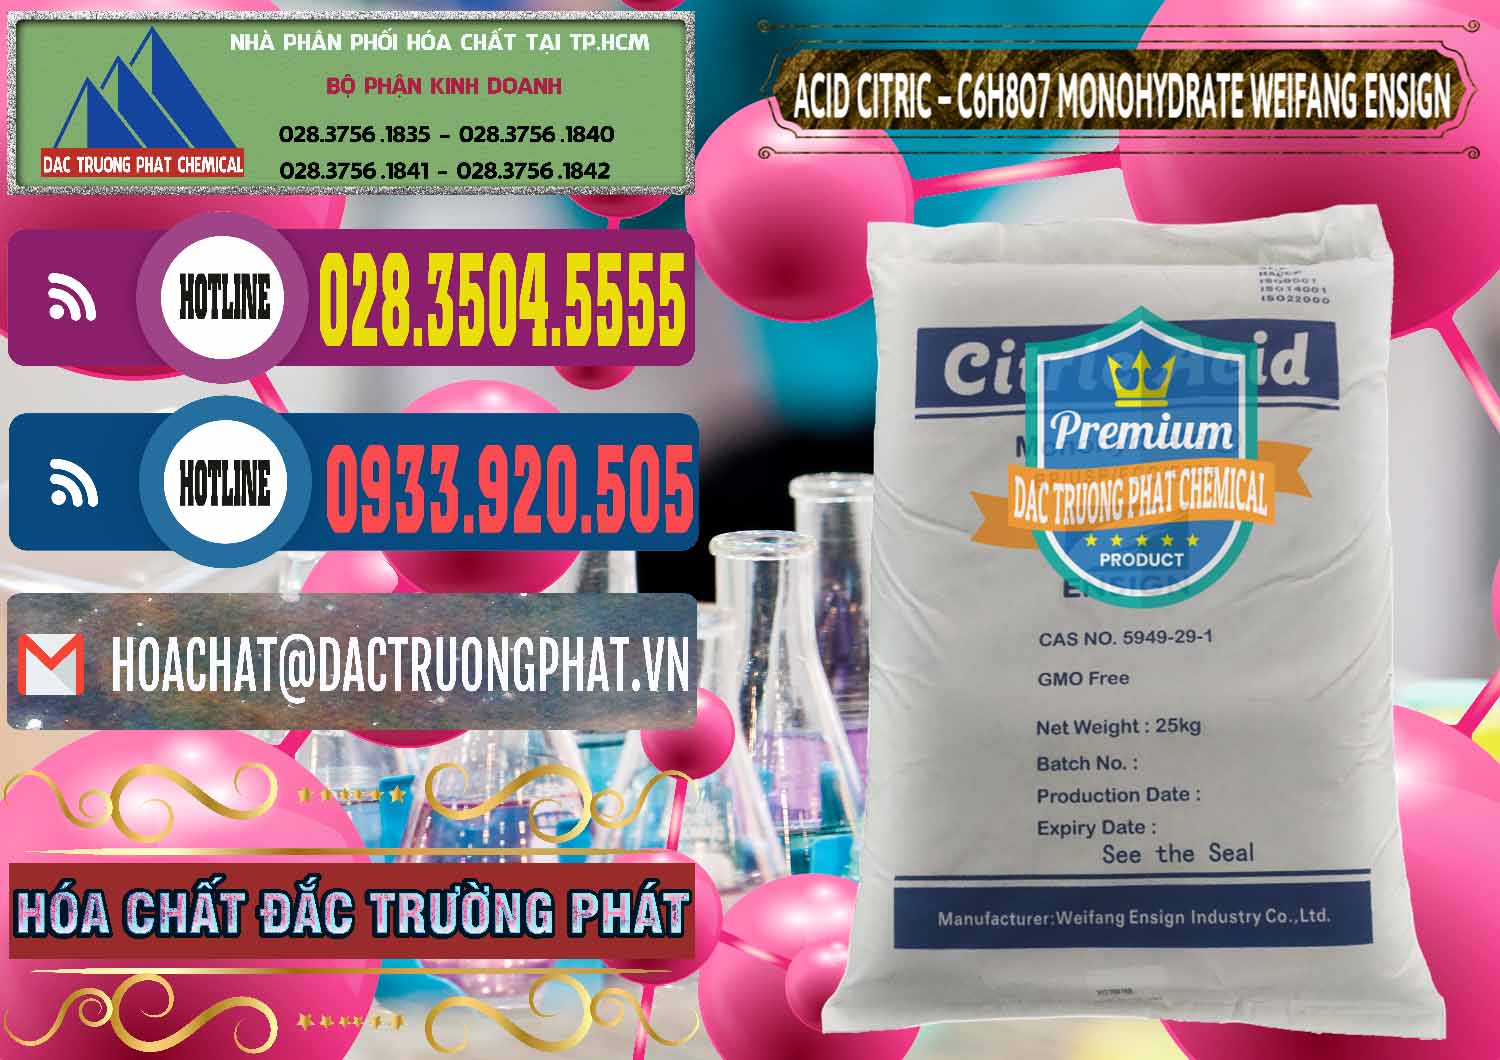 Nơi nhập khẩu & bán Acid Citric - Axit Citric Monohydrate Weifang Trung Quốc China - 0009 - Cty bán _ phân phối hóa chất tại TP.HCM - muabanhoachat.com.vn